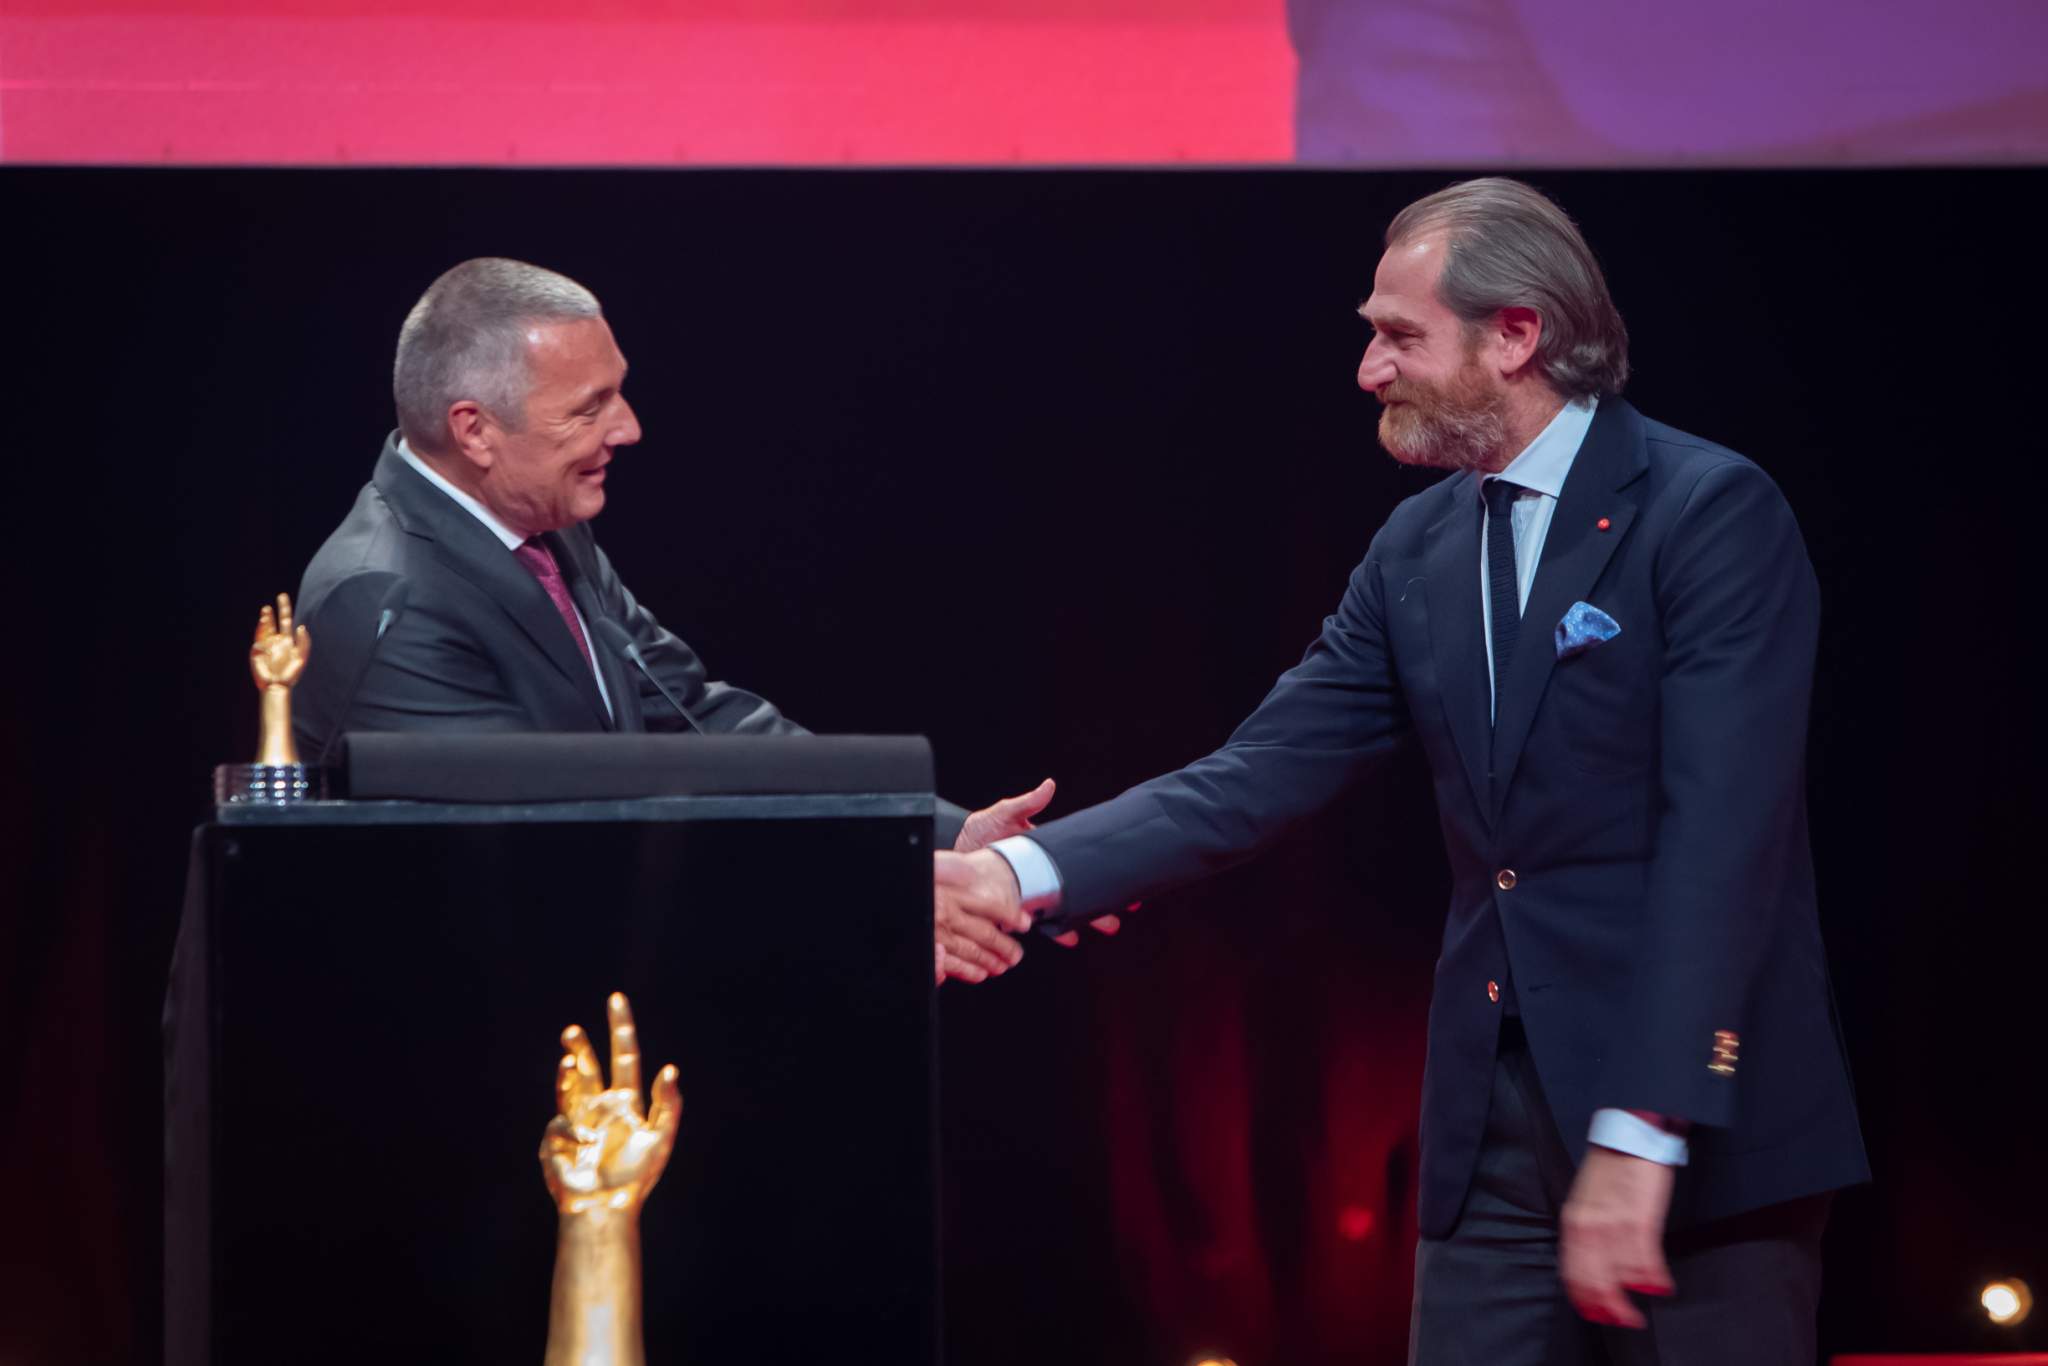 Jean-Christophe Babin, CEO of Bulgari, winner of the “Aiguille d’Or” Grand Prix 2021 and Fabrizio Buonamassa, Creative director of Bulgari